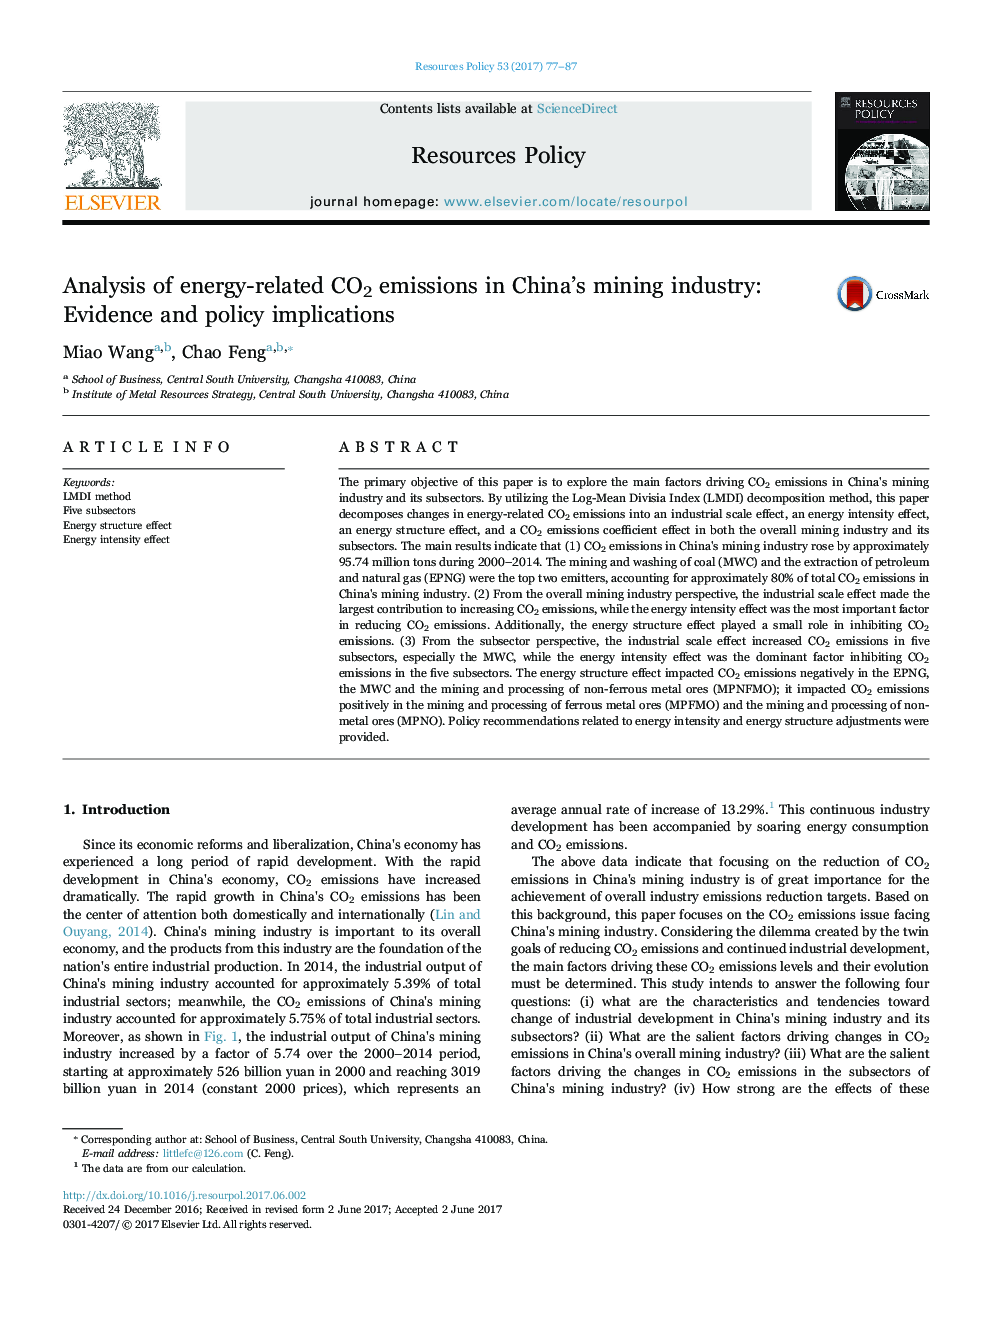 تجزیه و تحلیل انتشار گازهای گلخانه ای مرتبط با انرژی در صنایع معدنی چین: شواهد و پیامدهای سیاست 